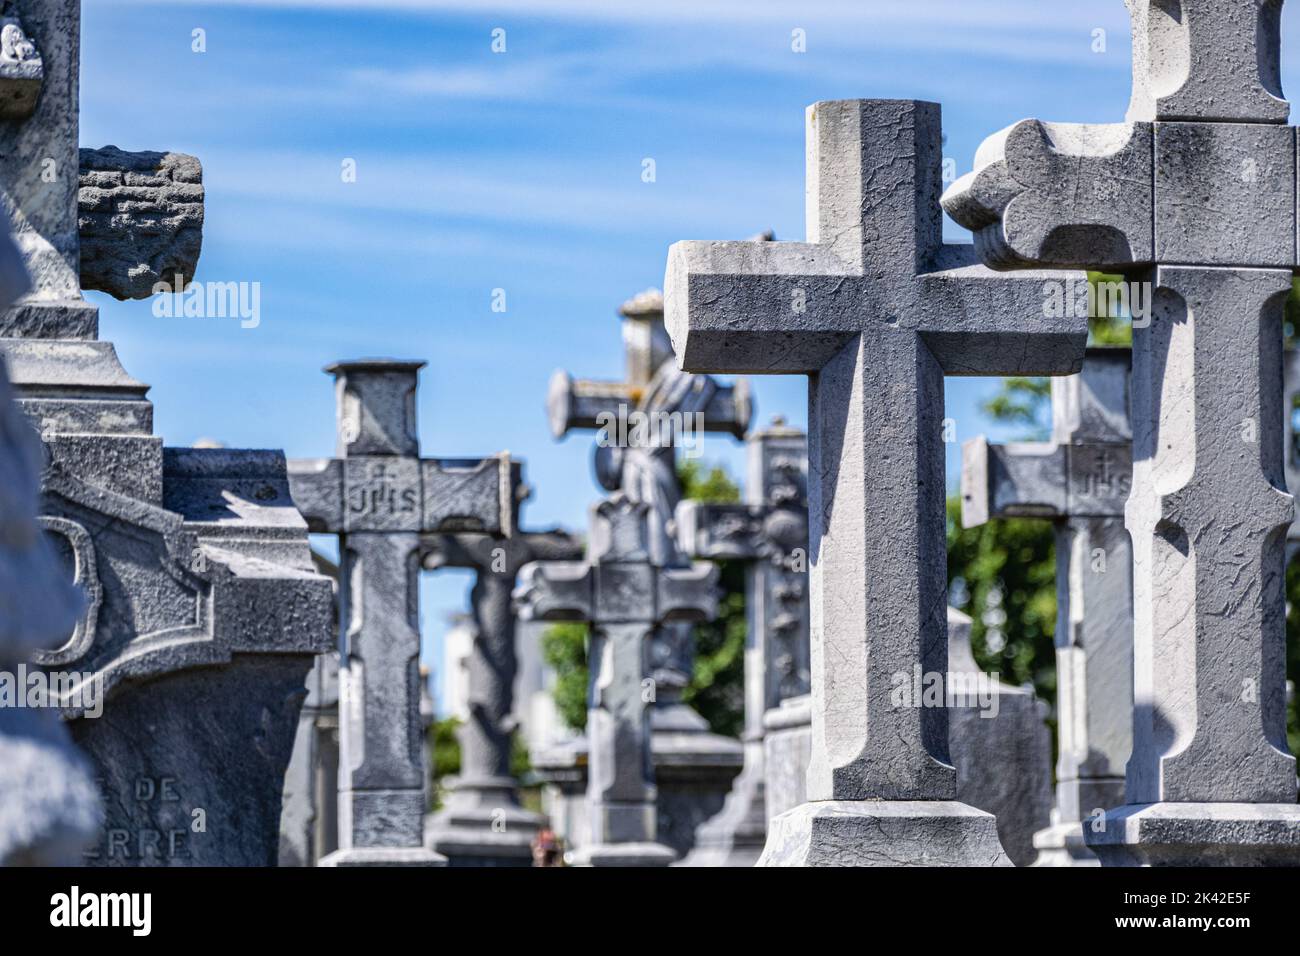 Lápidas y cruces en un cementerio francés Foto de stock